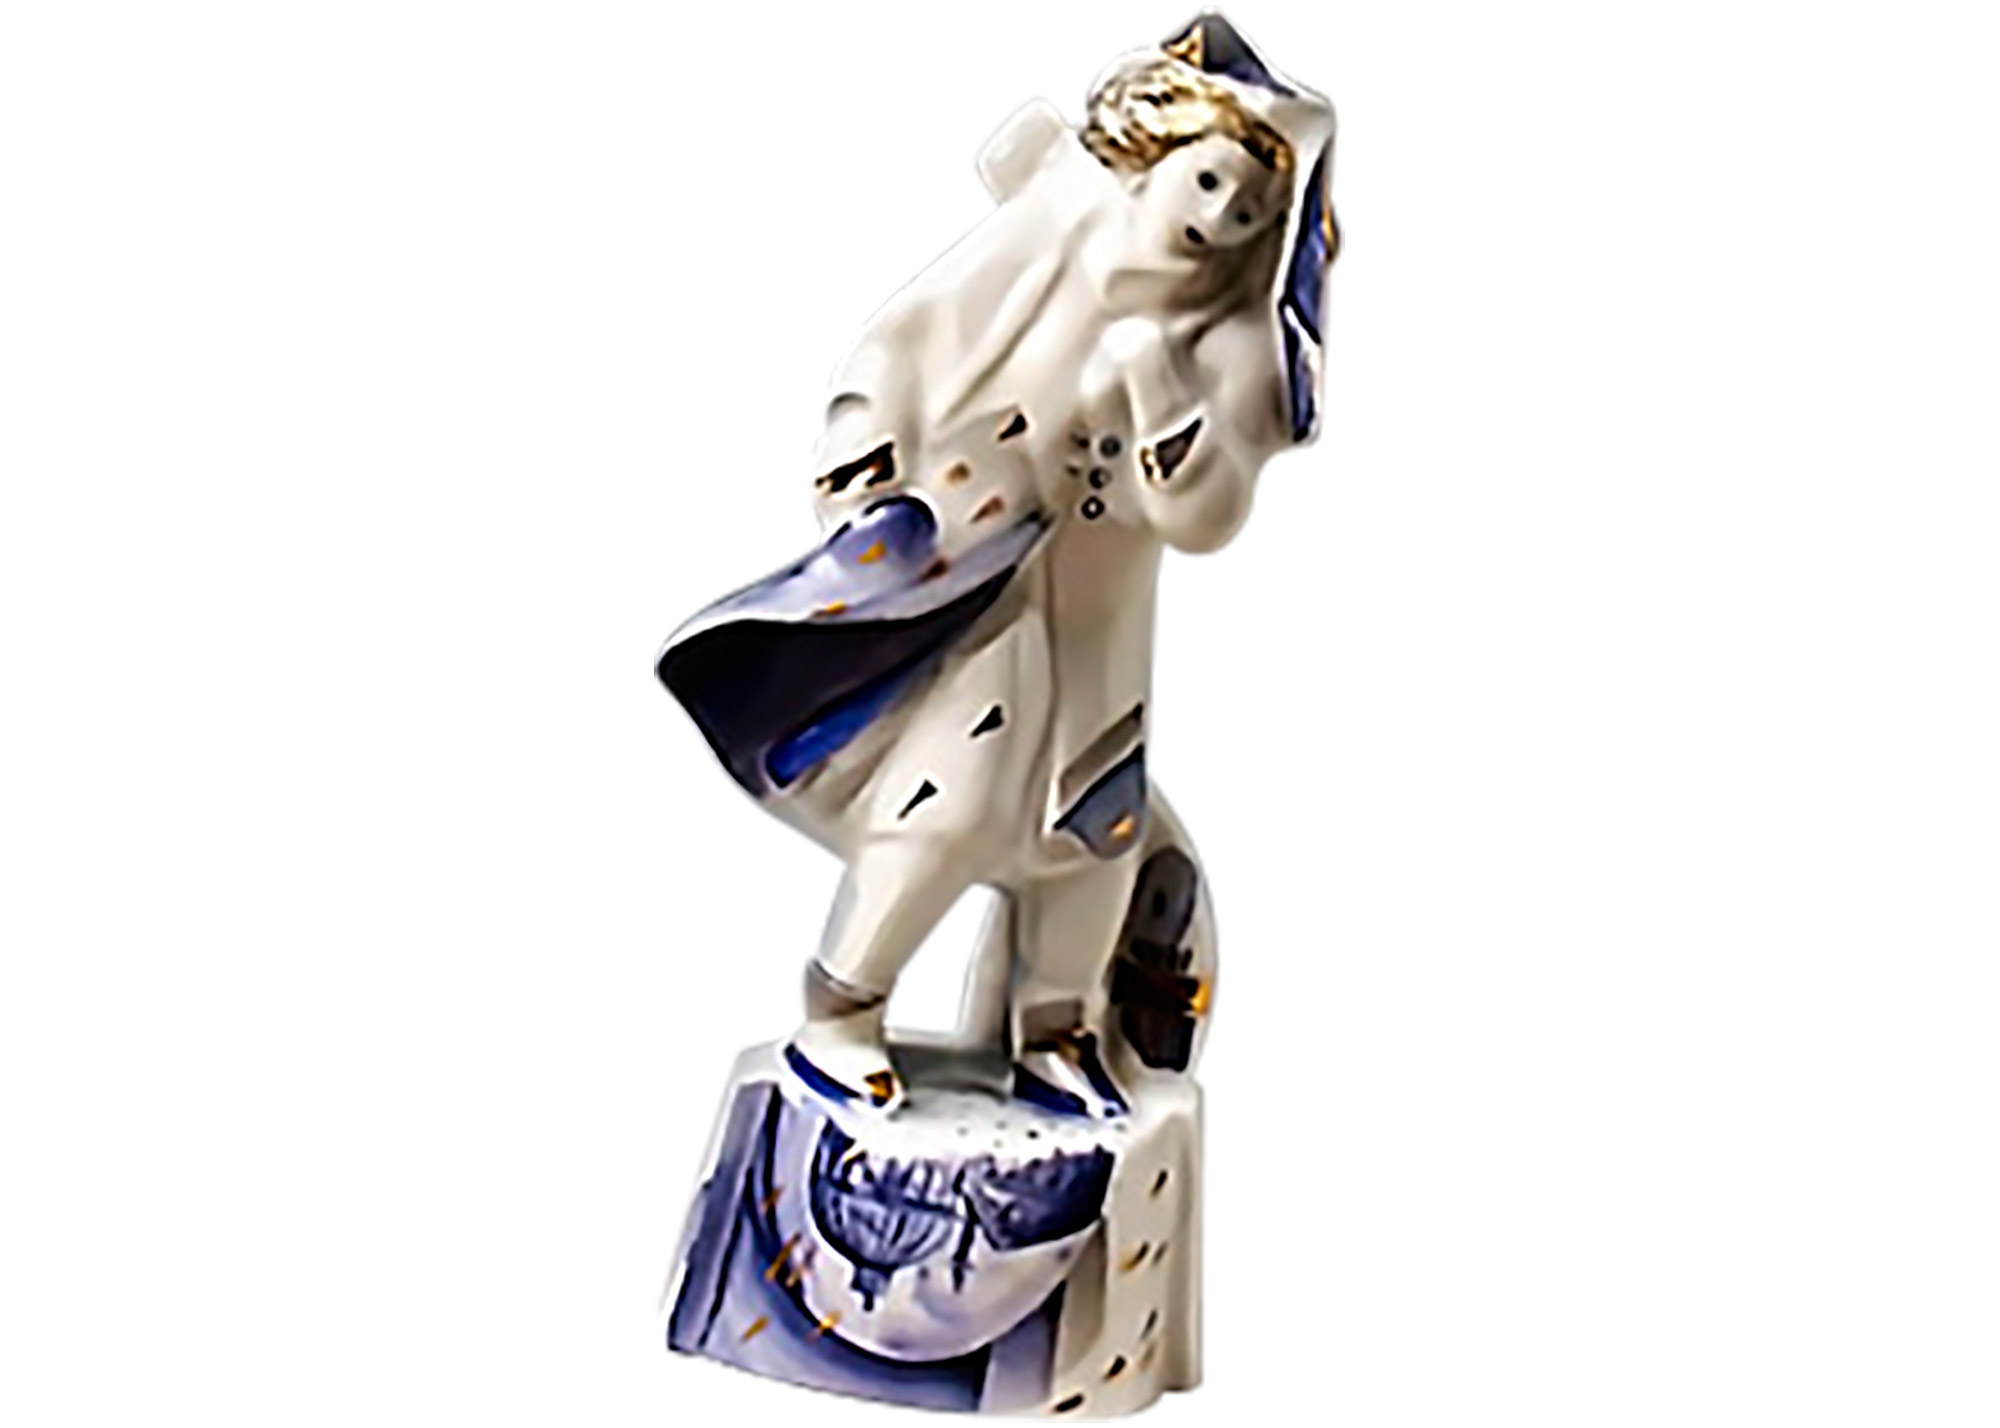 Buy Wind Porcelain Figurine at GoldenCockerel.com